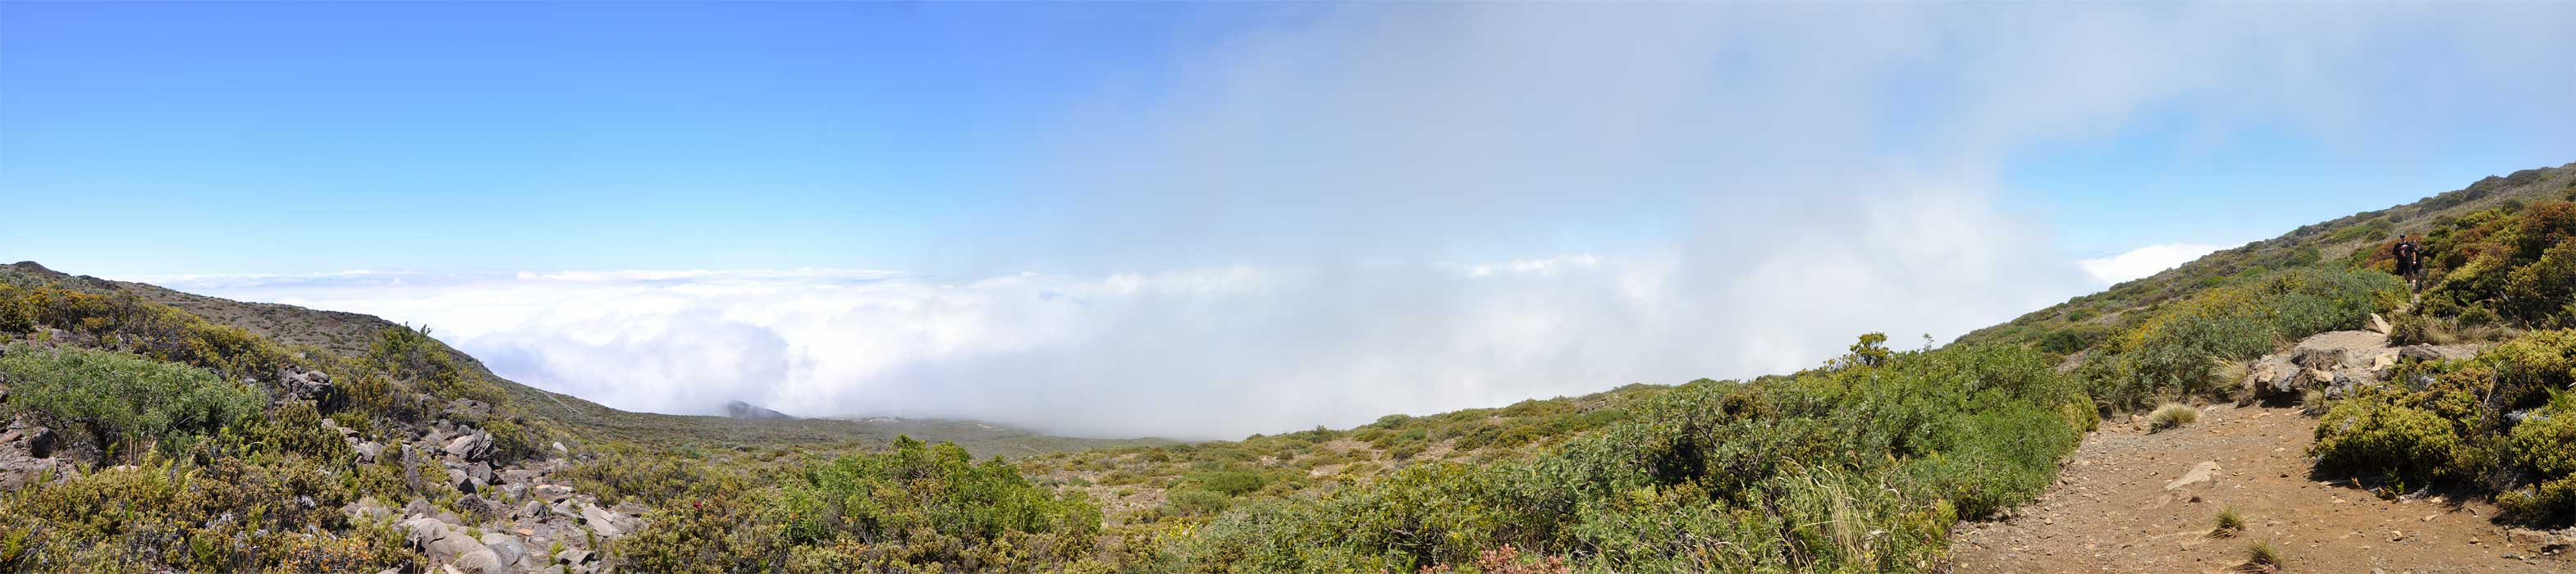 Leleiwi Overloook panorama